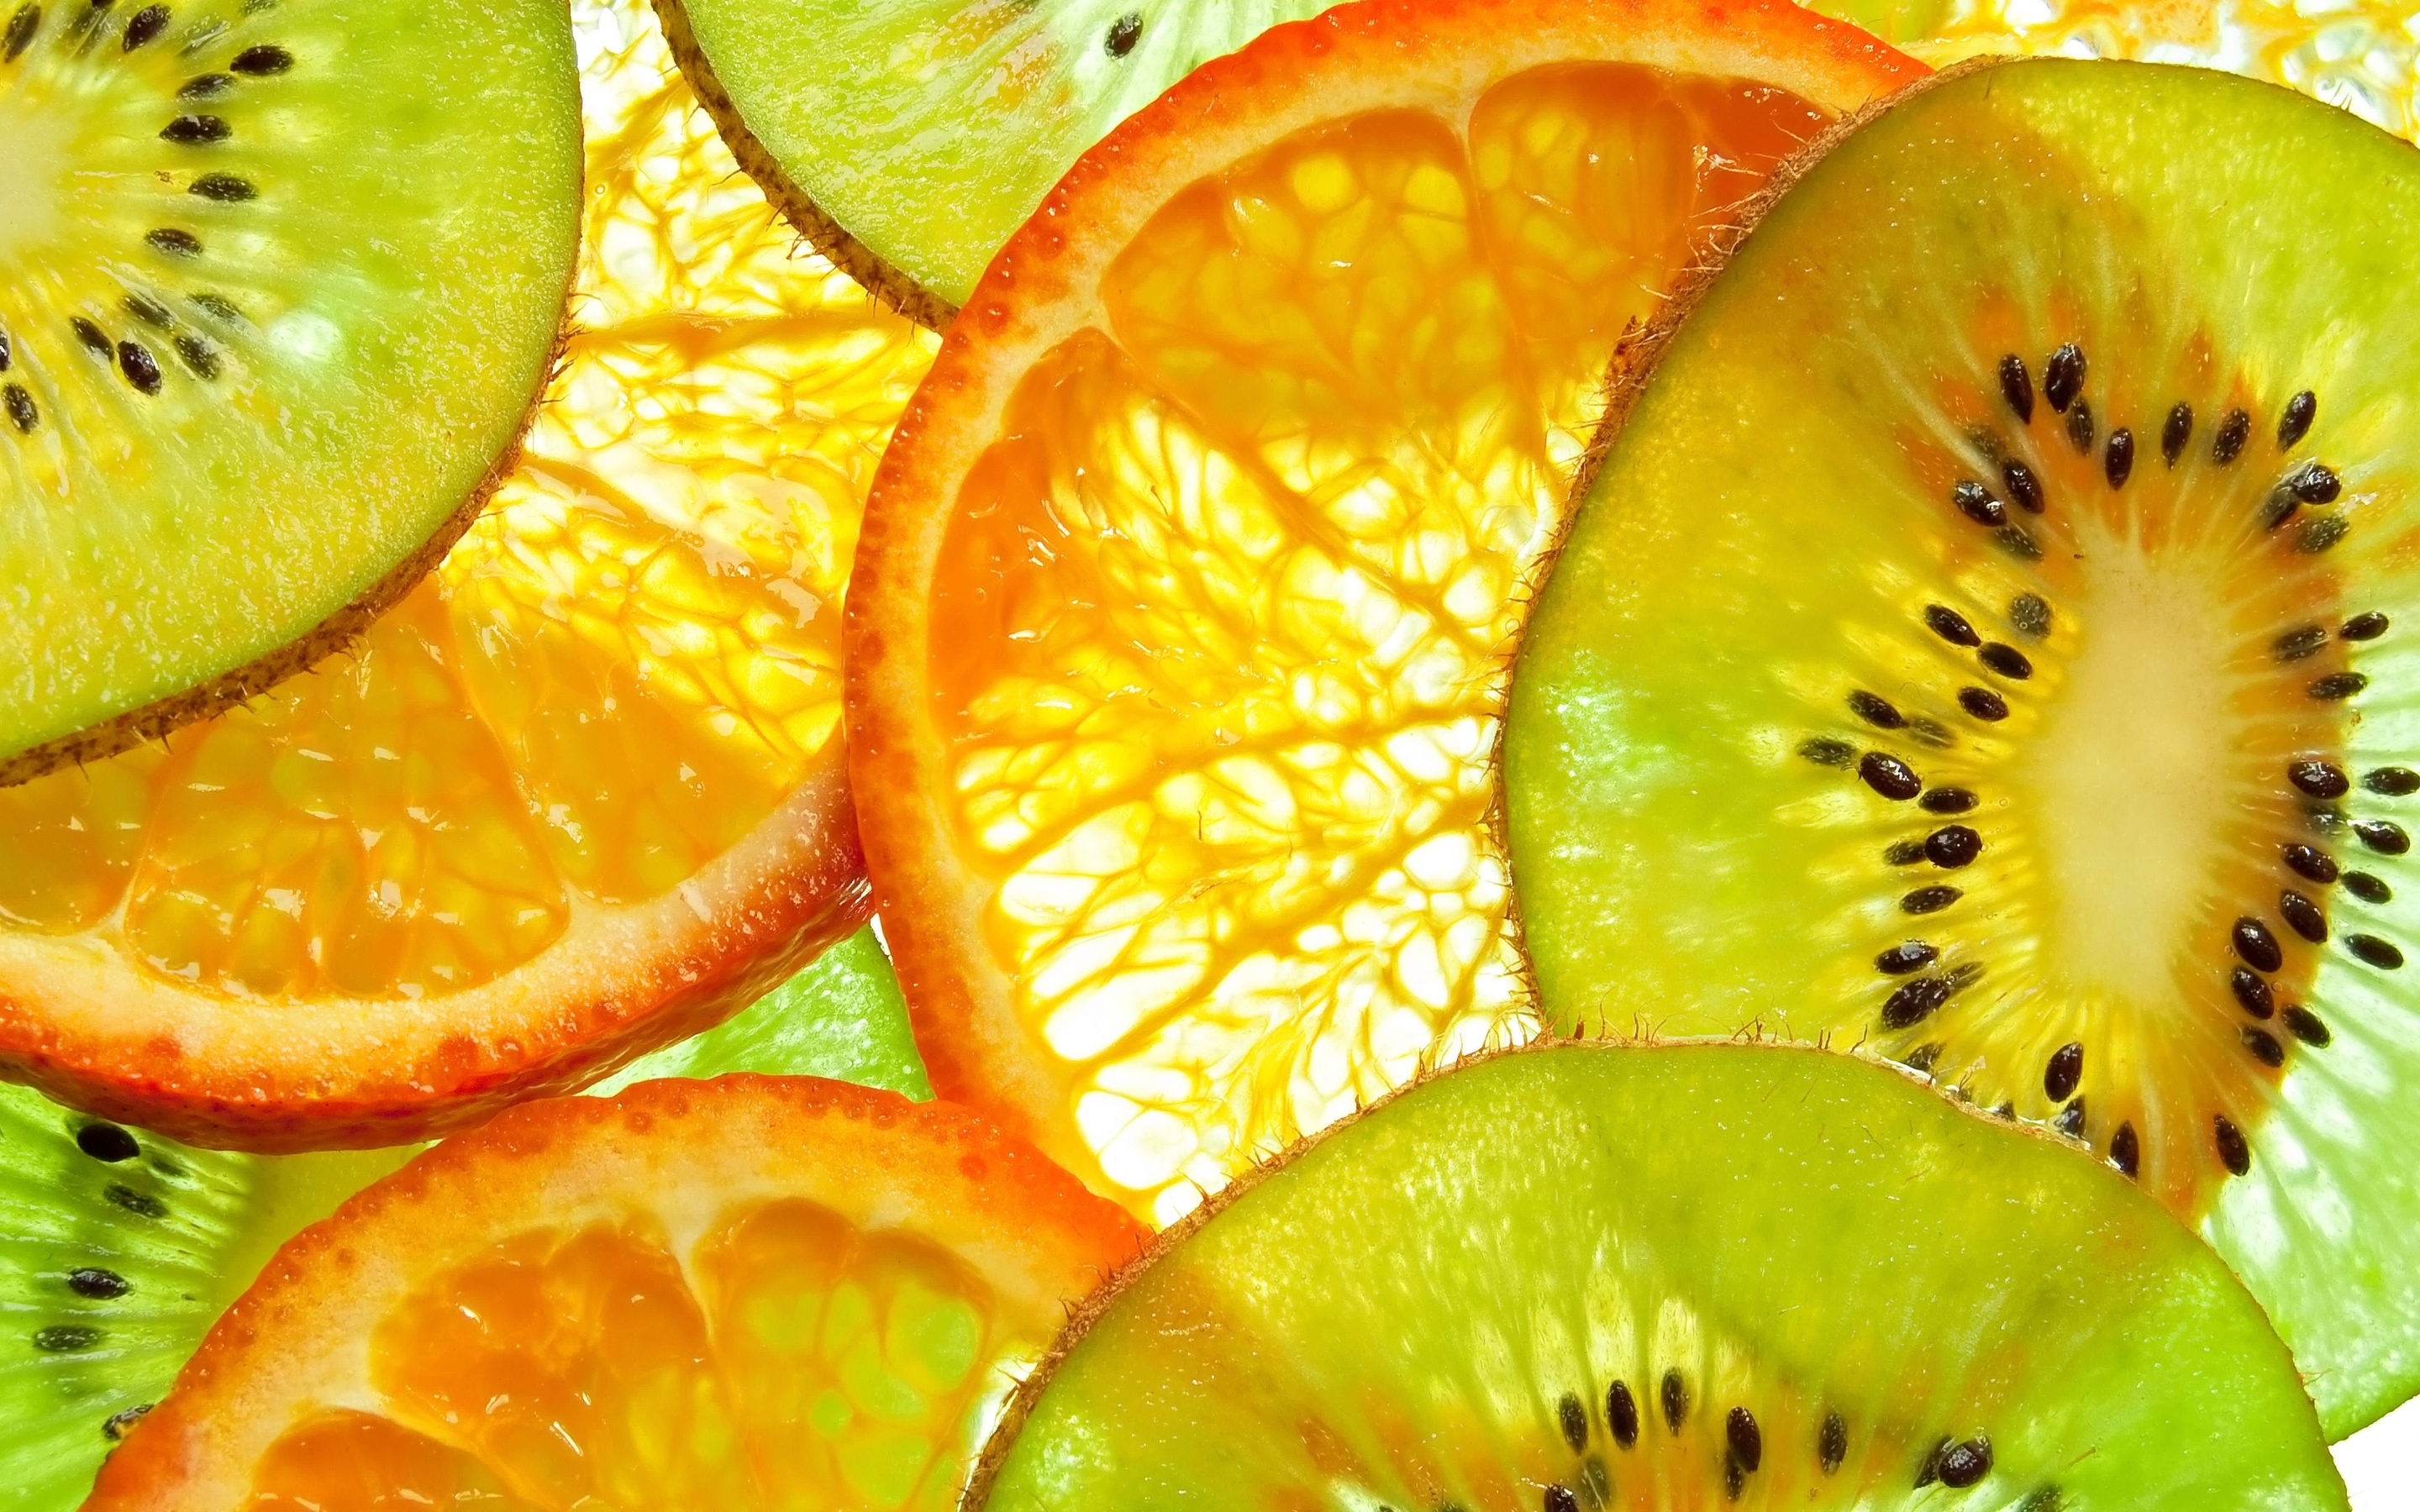 Картинка: Фрукты, кусочки, киви, апельсин, витамины, цитрус